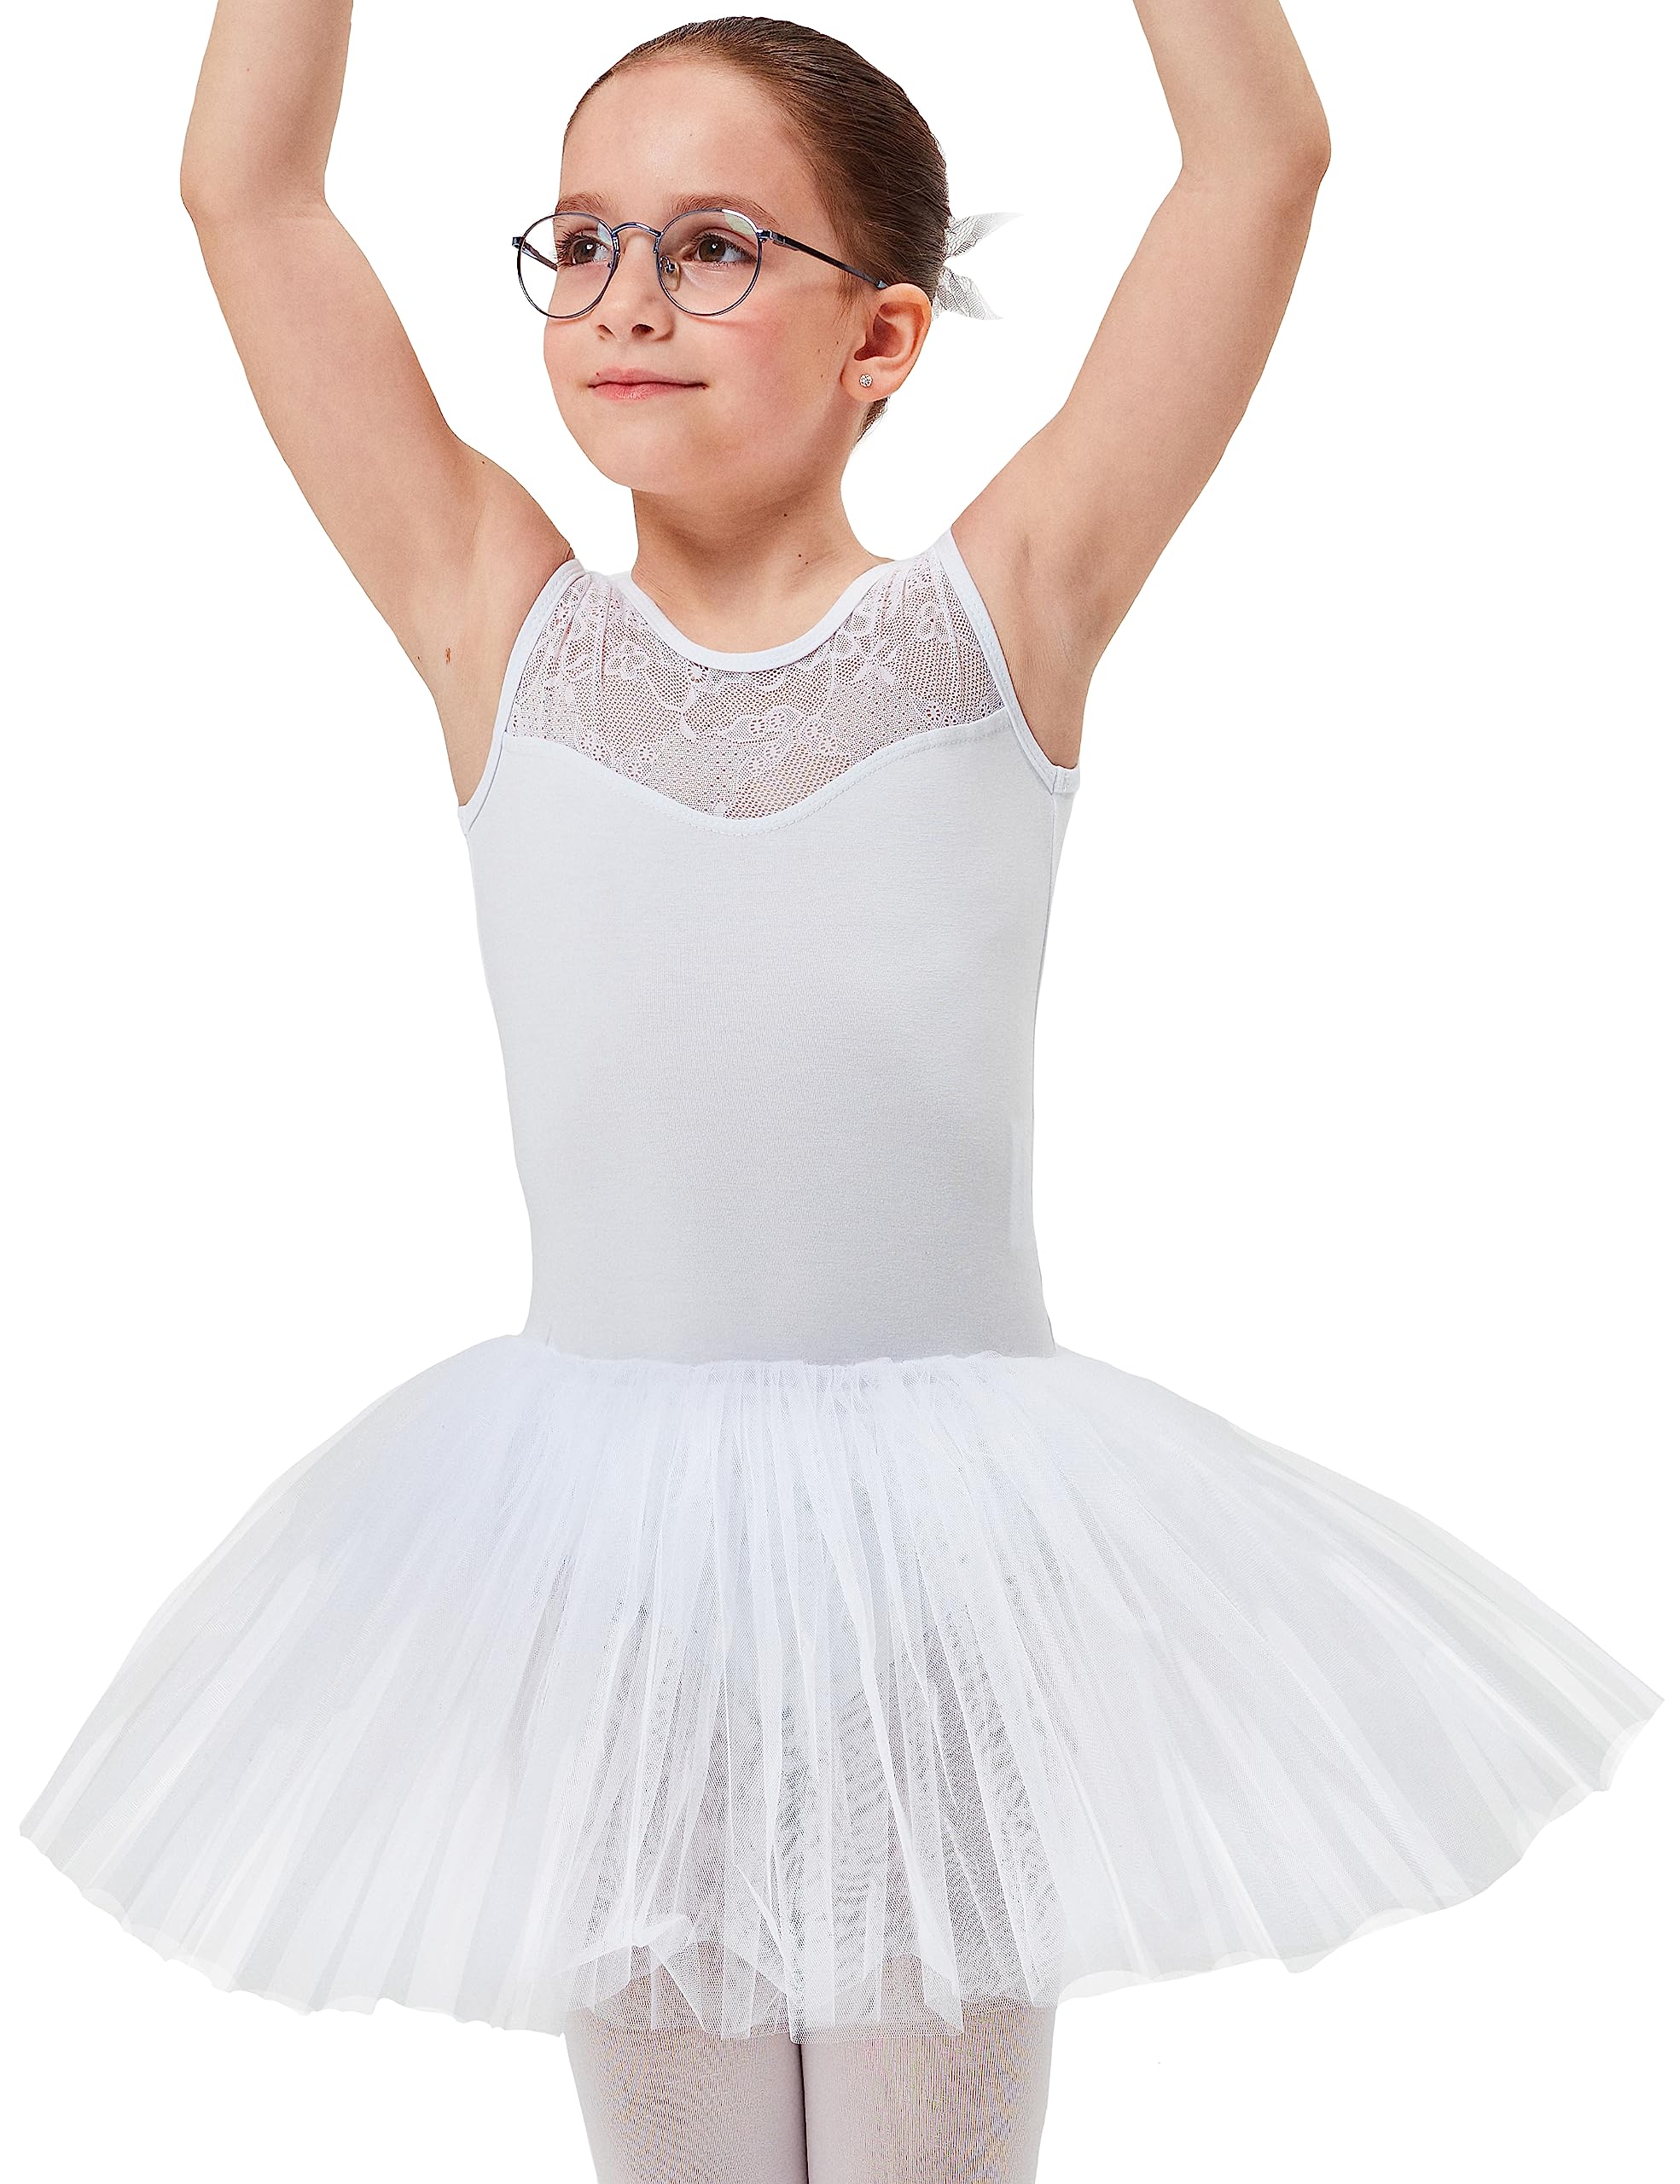 tanzmuster ® Ballettkleid Mädchen Tutu - Lottie - aus weichem Baumwollmaterial mit Spitzeneinsatz vorn und Tuturock Trikot fürs Kinder Ballett in weiß, Größe:104/110